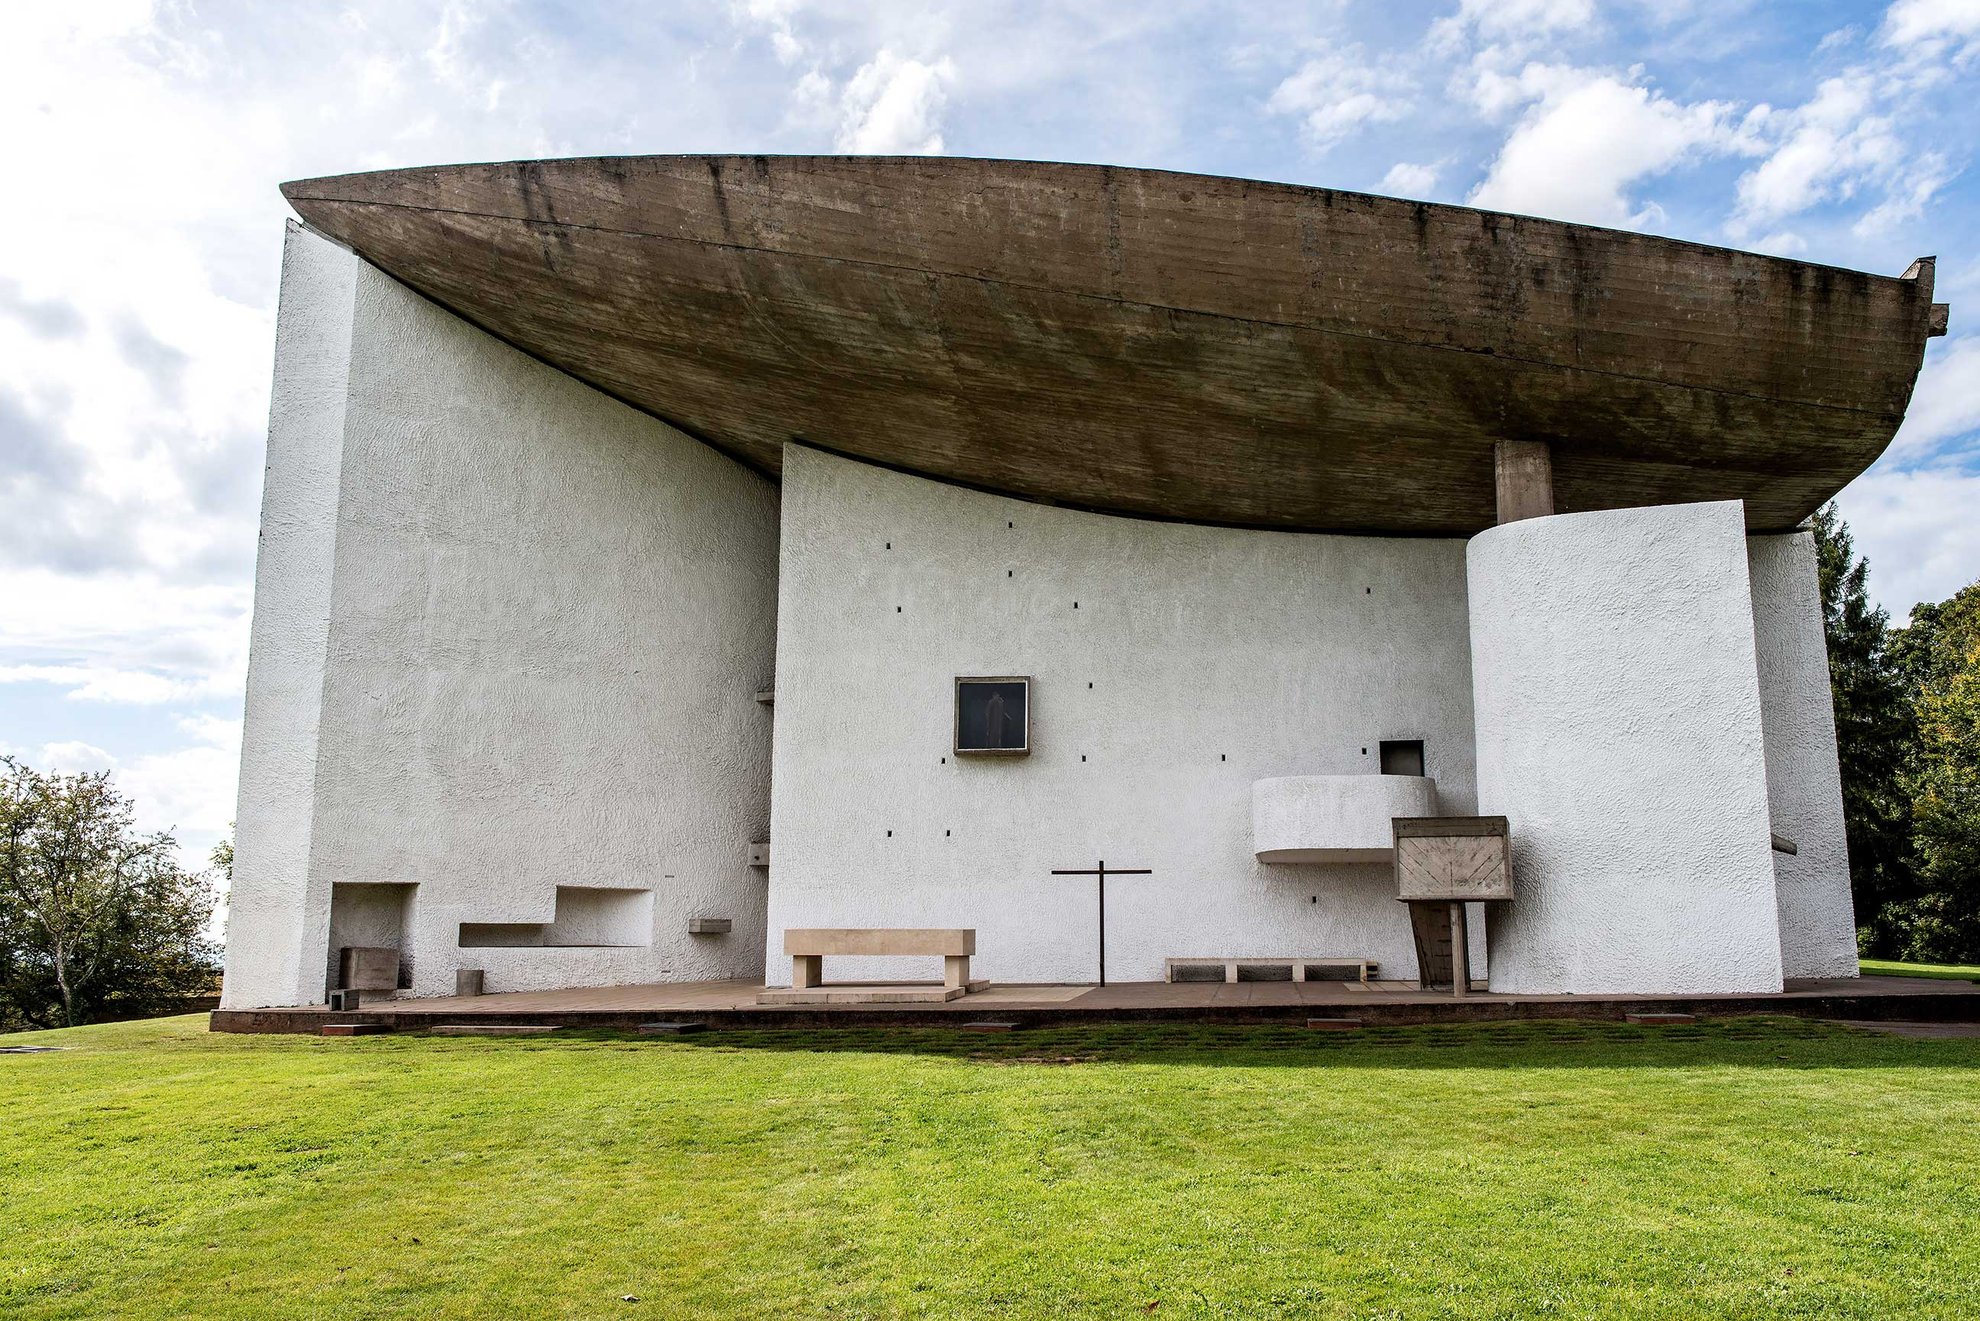 Le Corbusier’s Chapelle Notre-Dame-du-Haut de Ronchamp